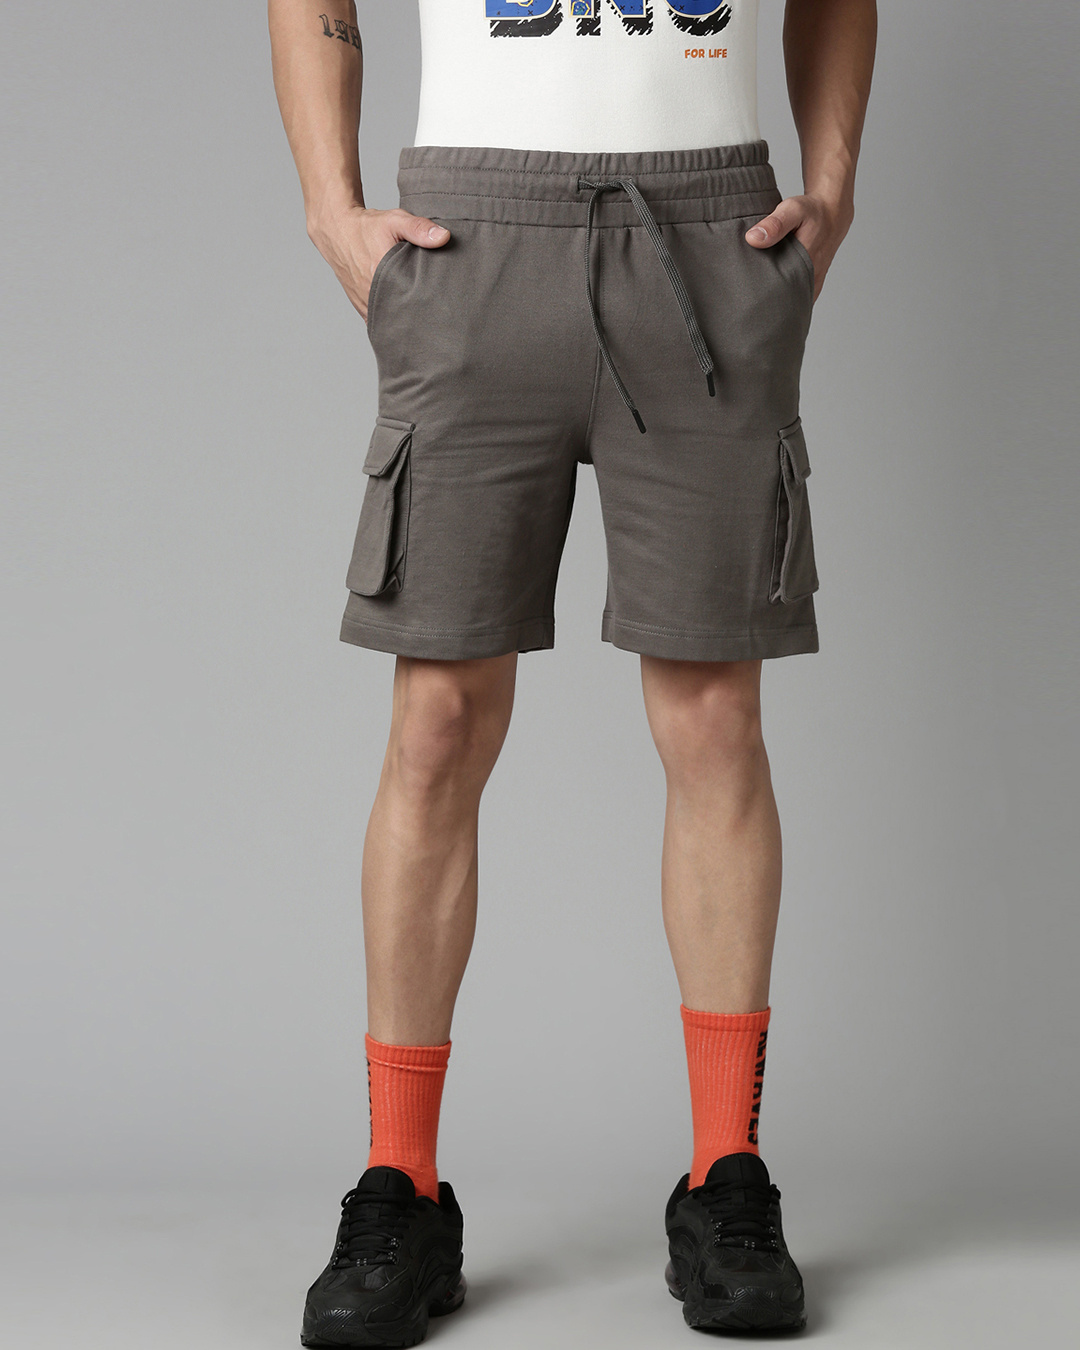 Buy Men's Grey Cargo Shorts Online at Bewakoof